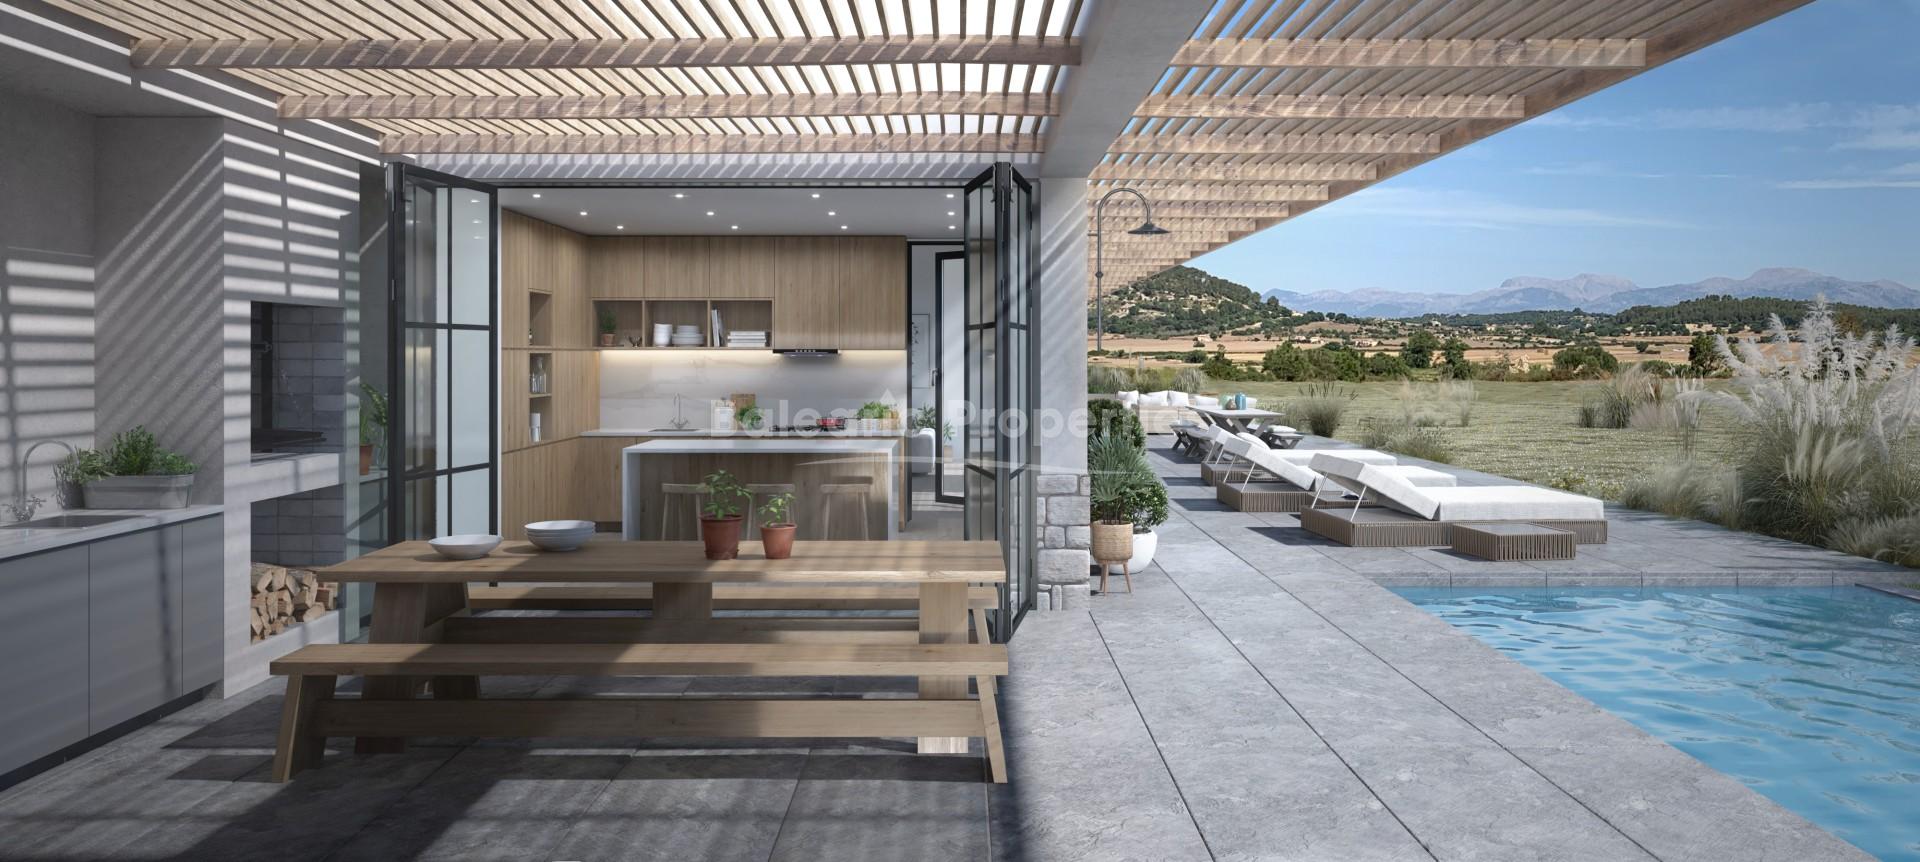 Casa de campo de nueva construcción en venta cerca de Sineu, Mallorca